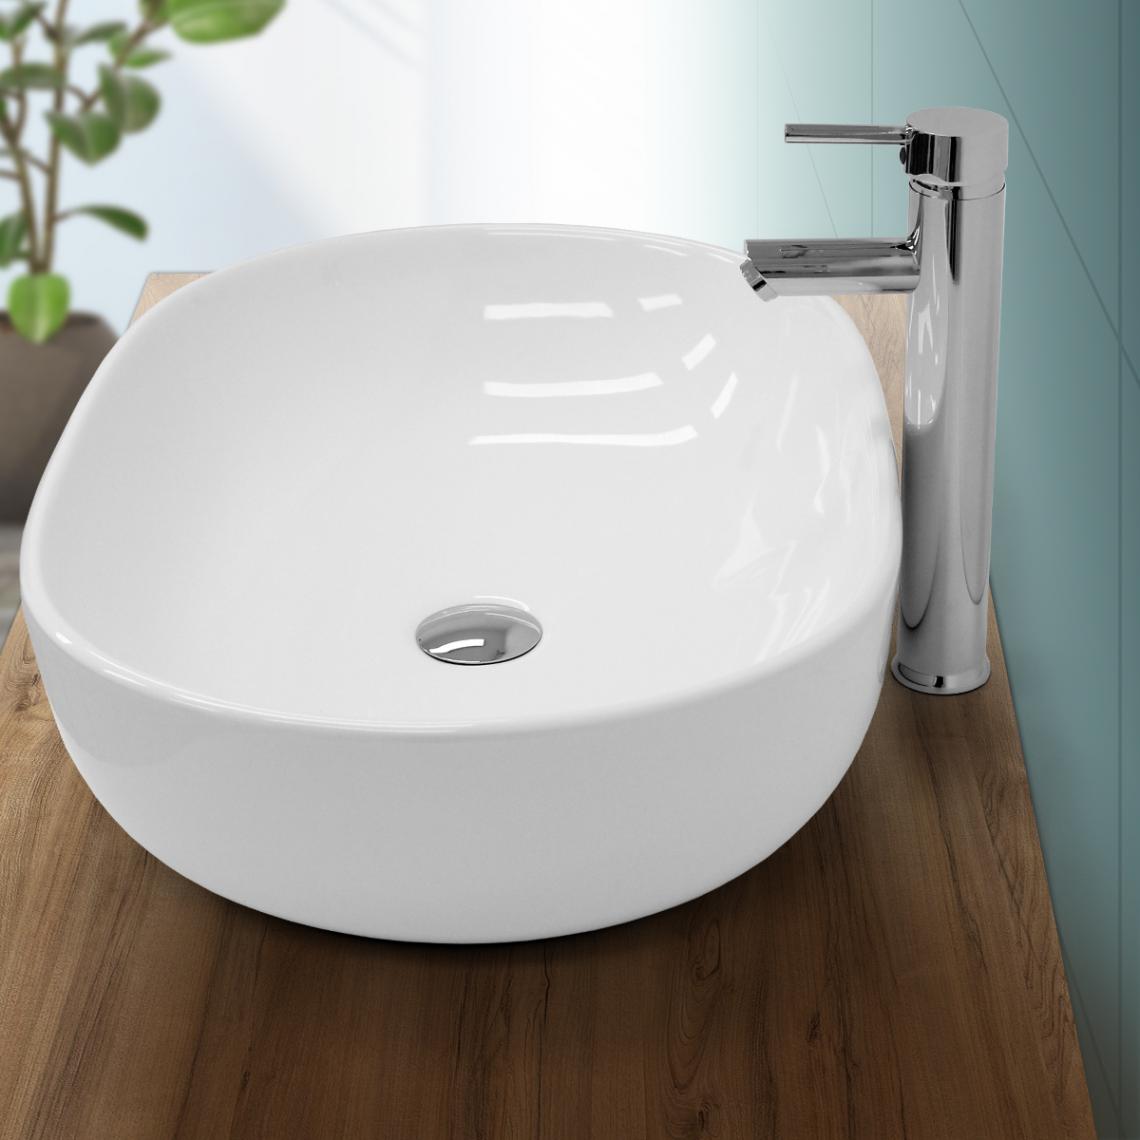 Ecd Germany - Évier en céramique vasque a poser ovale moderne pour salle de bain 600 x 420 mm - Lavabo